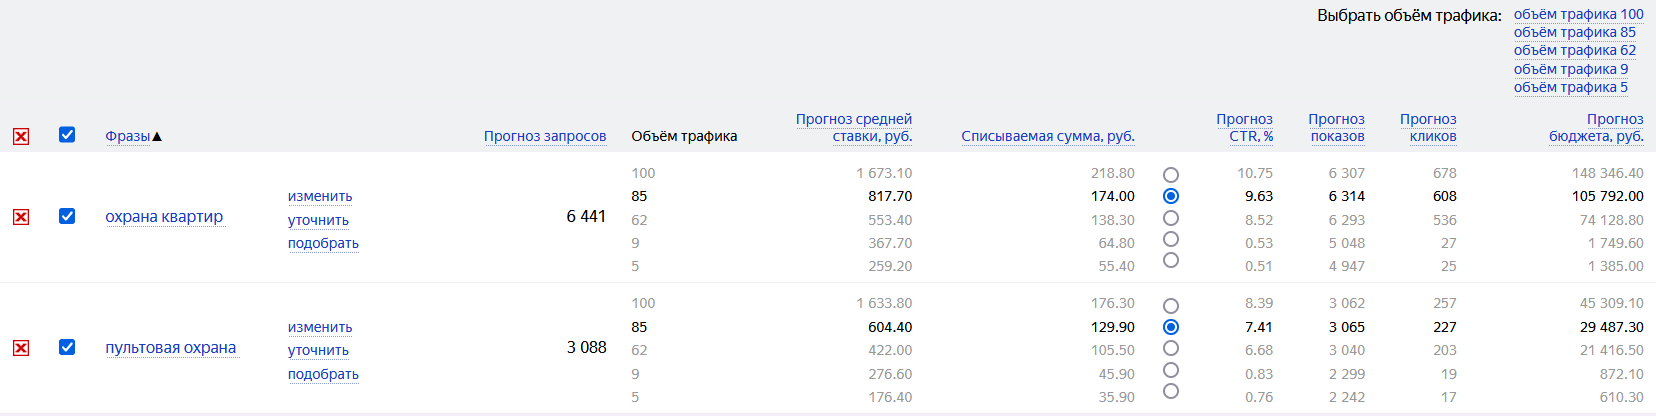 Так выглядит прогноз от Яндекса. Иногда он любит занижать списываемую цену в 2-3 раза, поэтому сильно не радуйтесь, если в вашей тематике он прогнозирует низкие цены